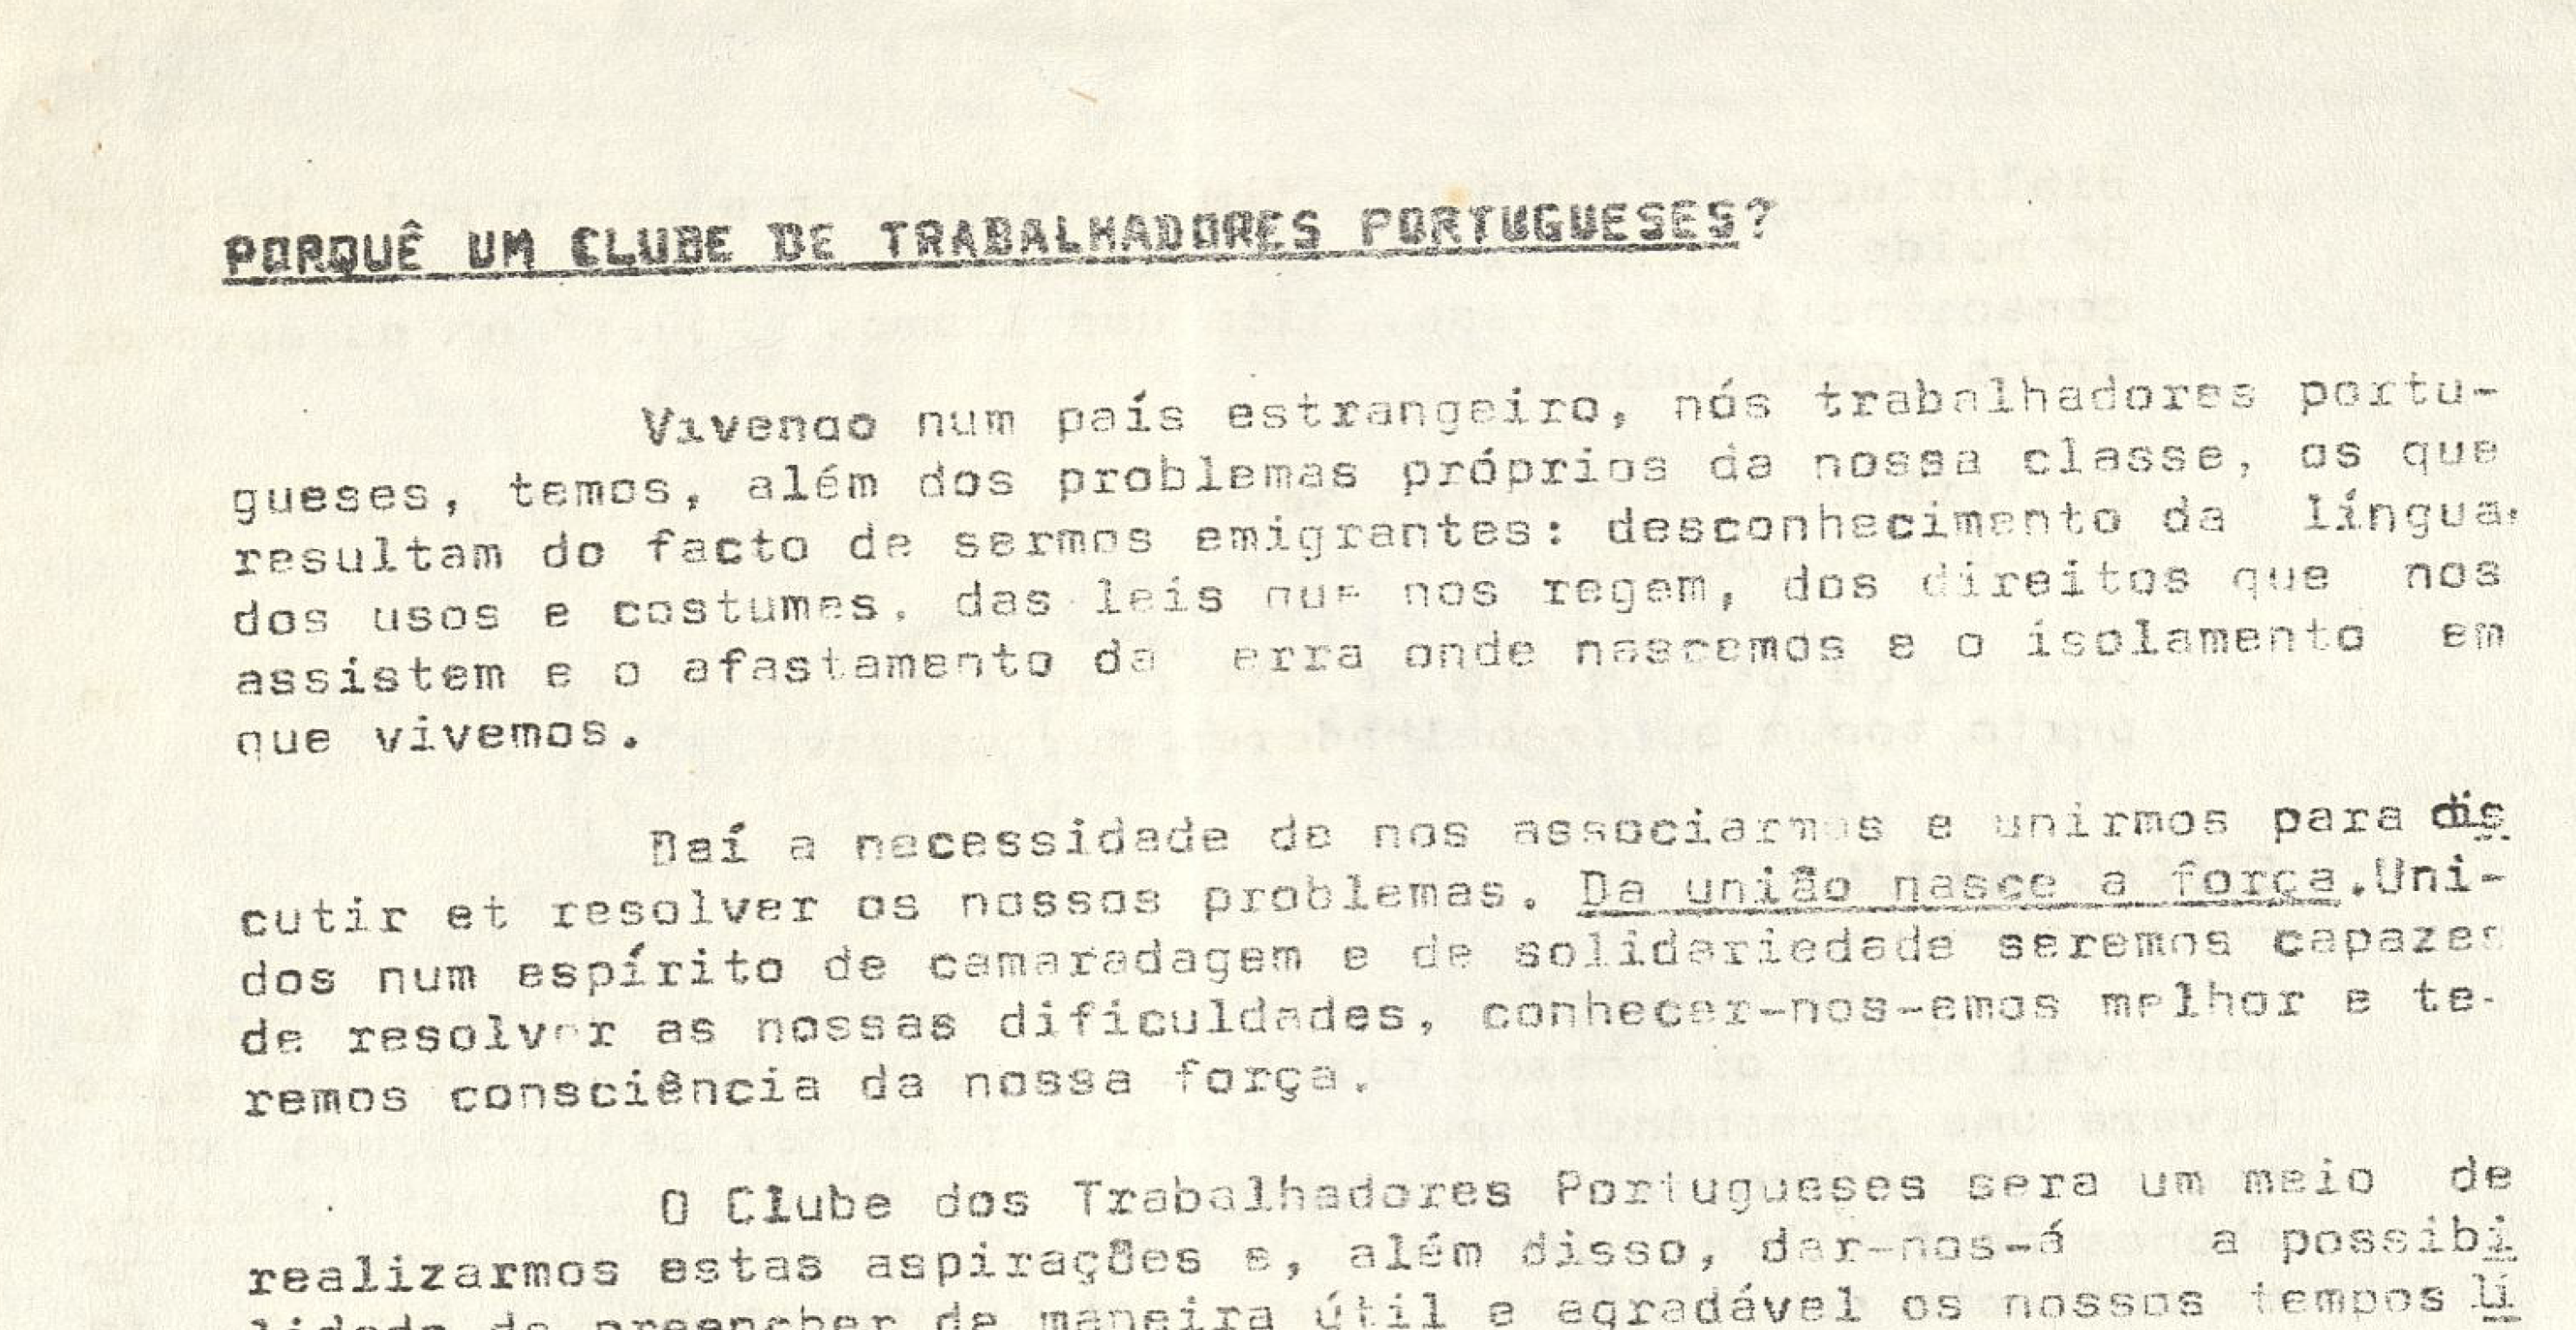 Porquê um clube de trabalhadores portugueses?